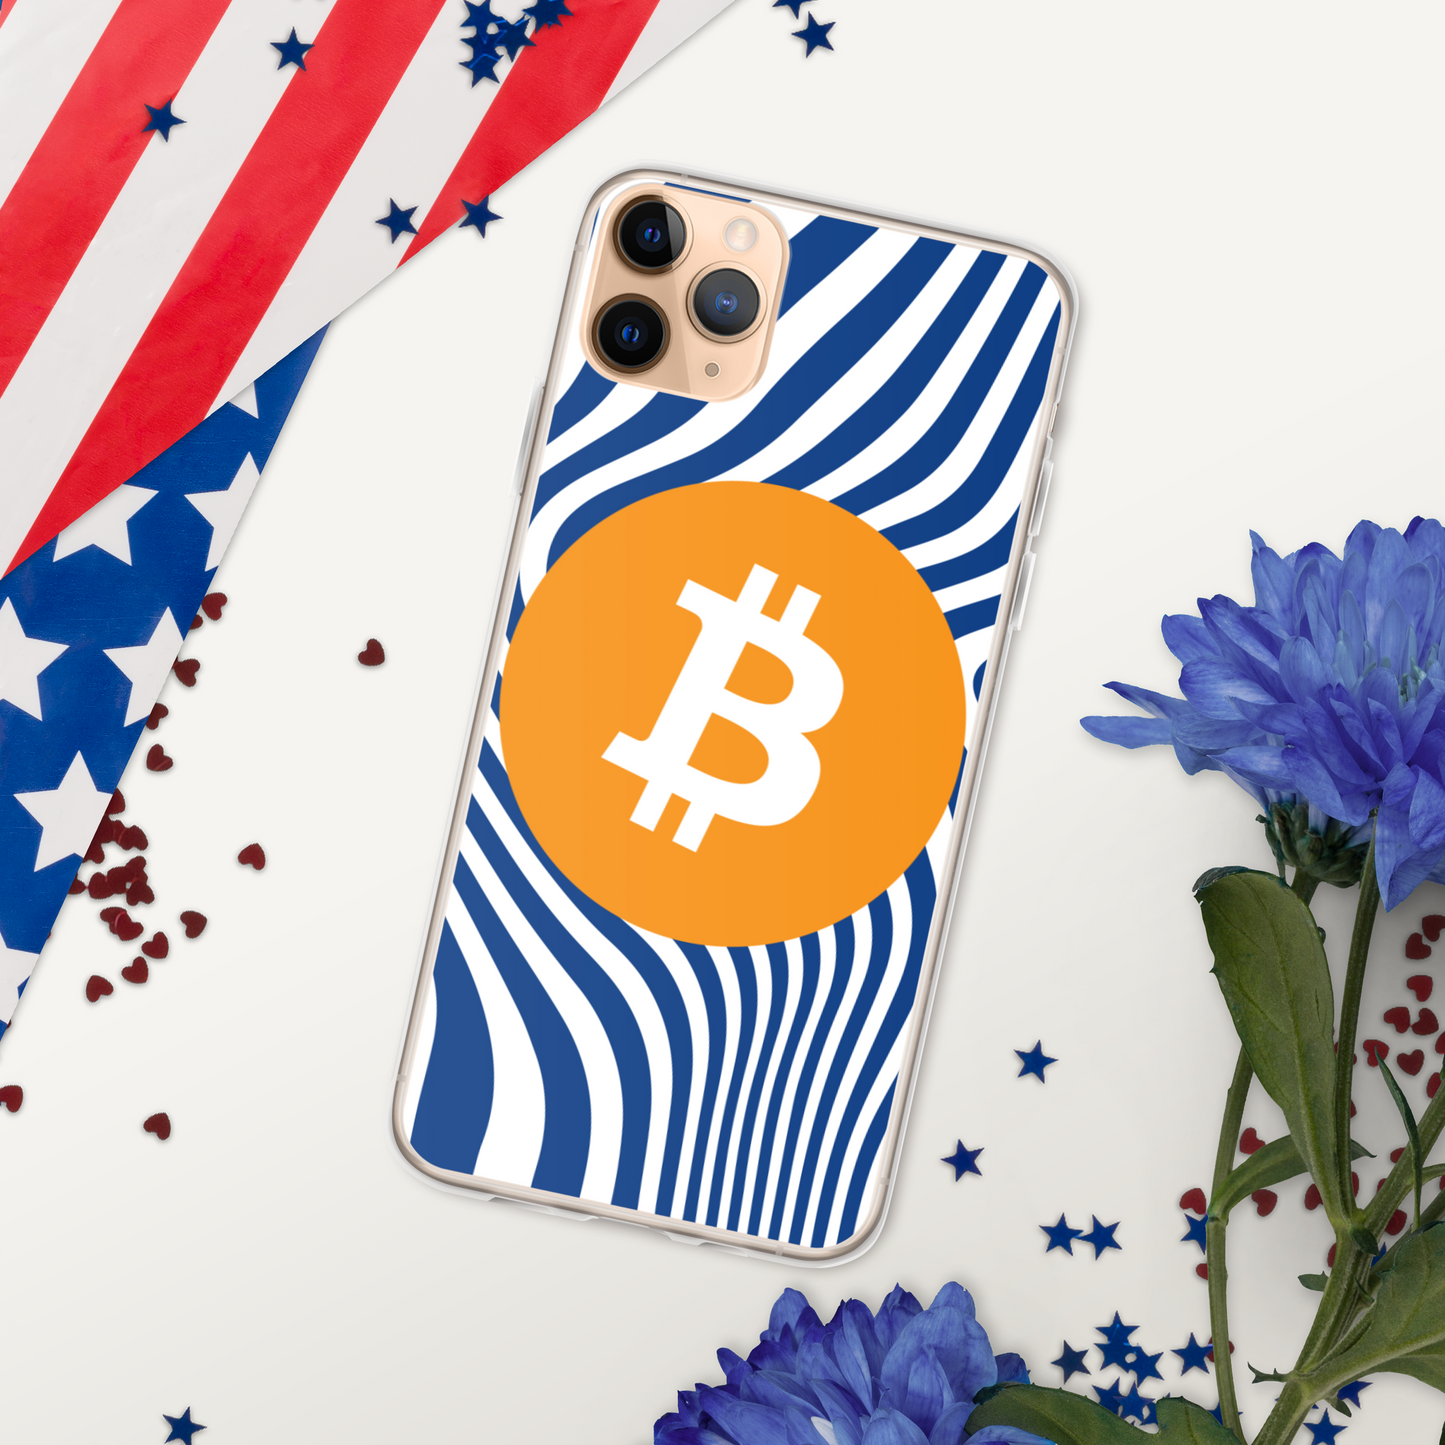 Bitcoin Abstract 46 Crypto BTC iPhone Case